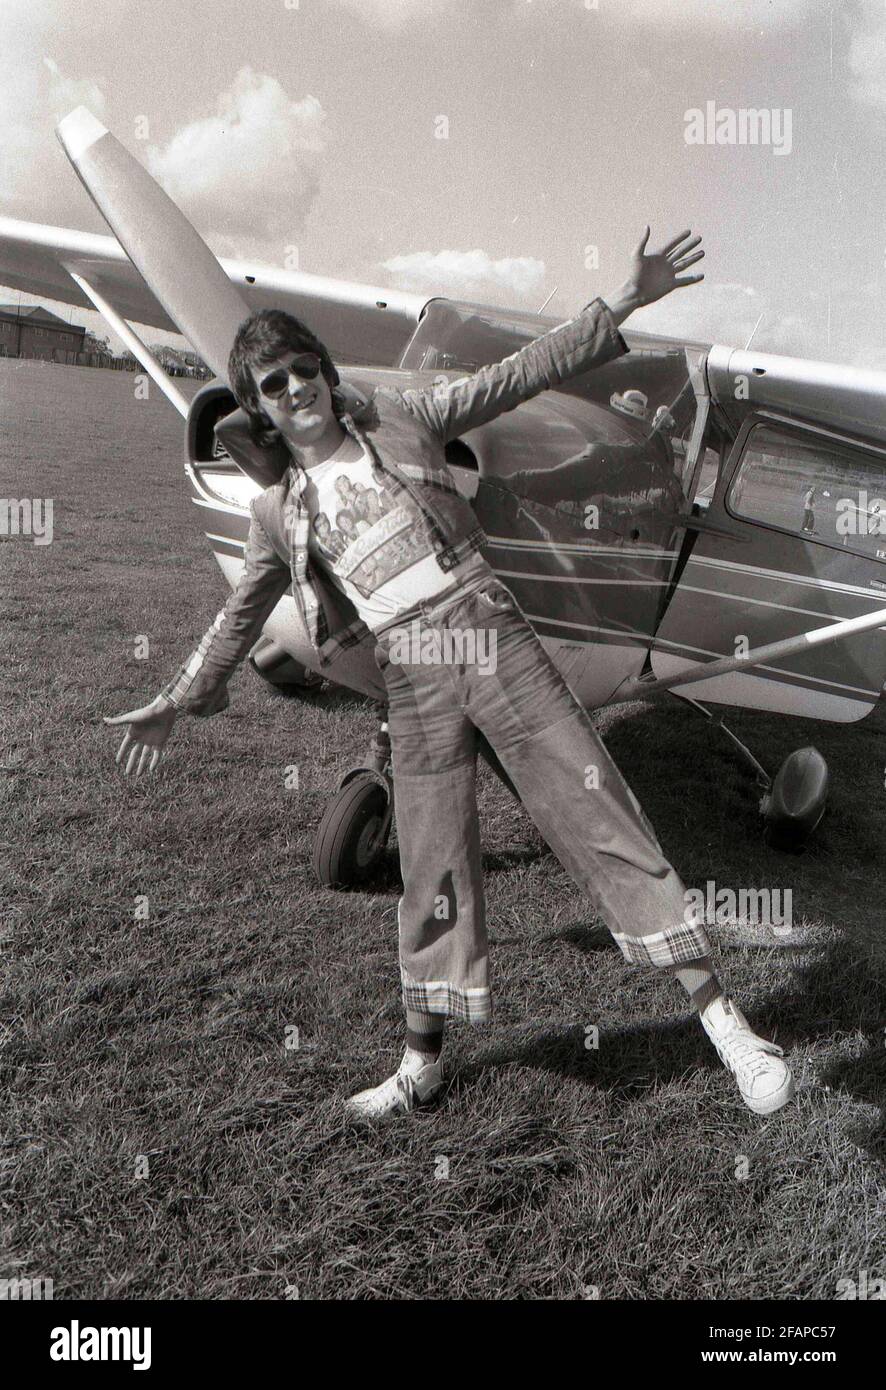 DATEI-FOTO: Der ehemalige Bay City Rollers Frontmann Les McKeown stirbt im Alter von 65 Jahren im Edinburgh Flying Club, um einen Kurs zu beginnen. Kredit: eric mccowat/Alamy Live Nachrichten Stockfoto